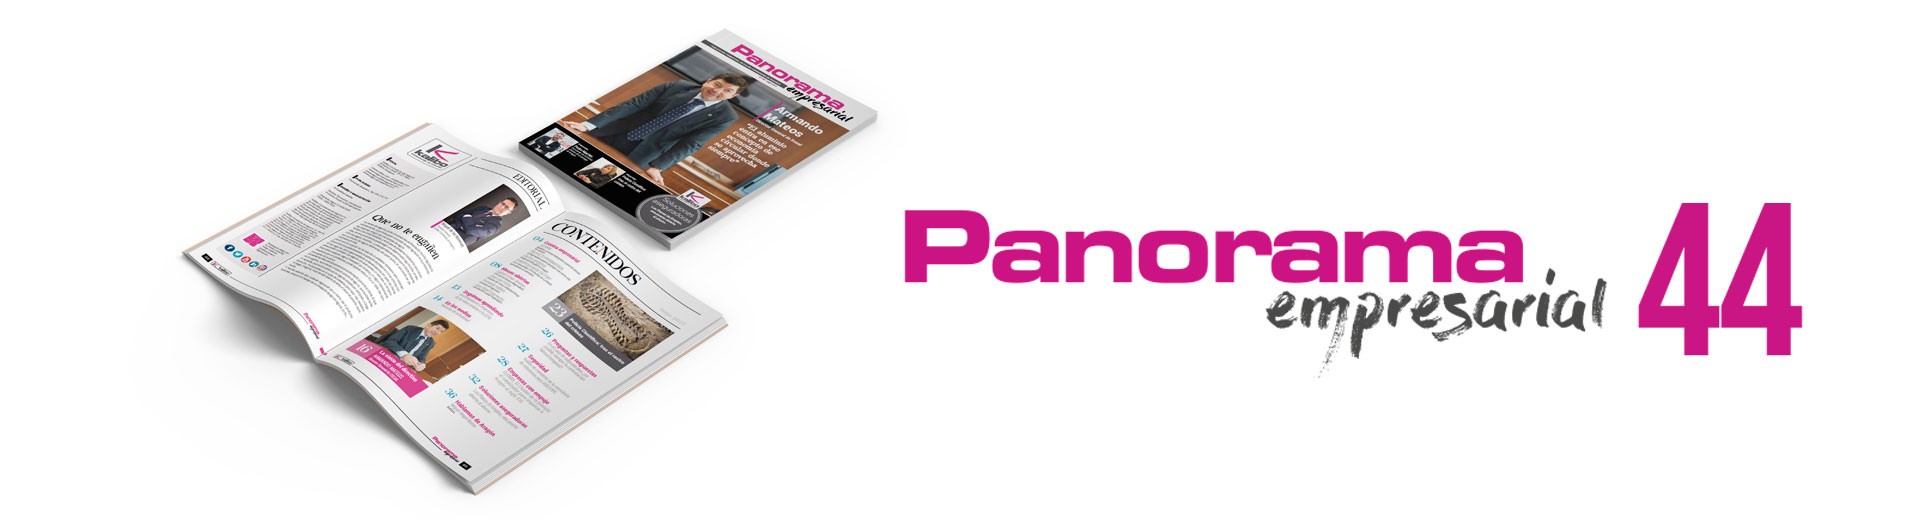 La 44ª Edición de Panorama ya está disponible 